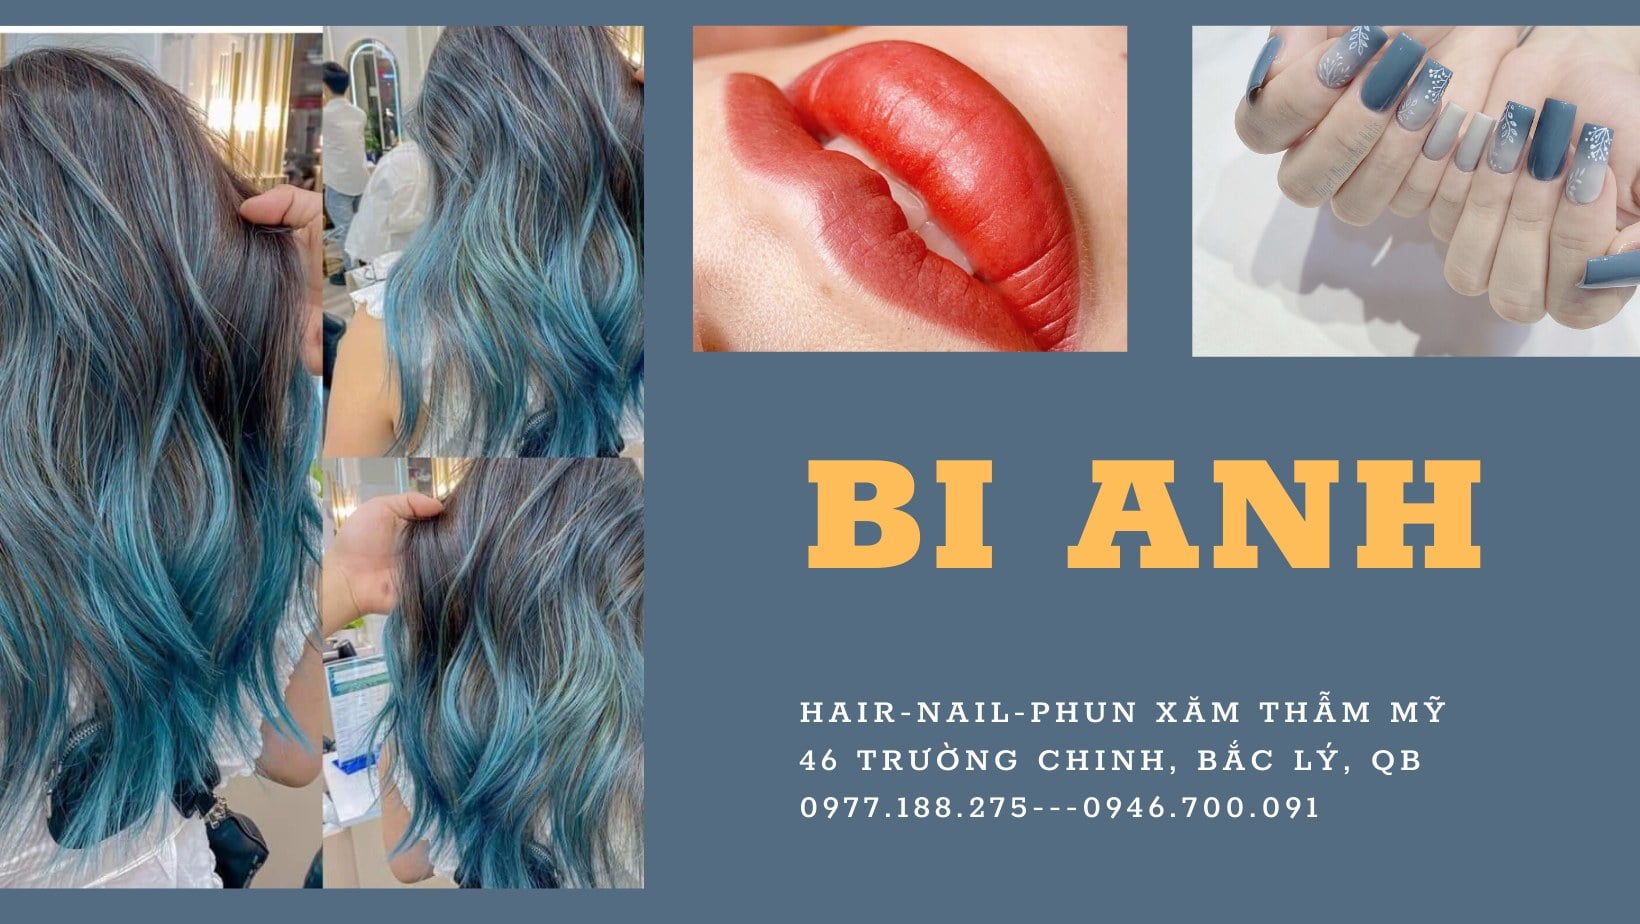 Hair Salon Bi Anh